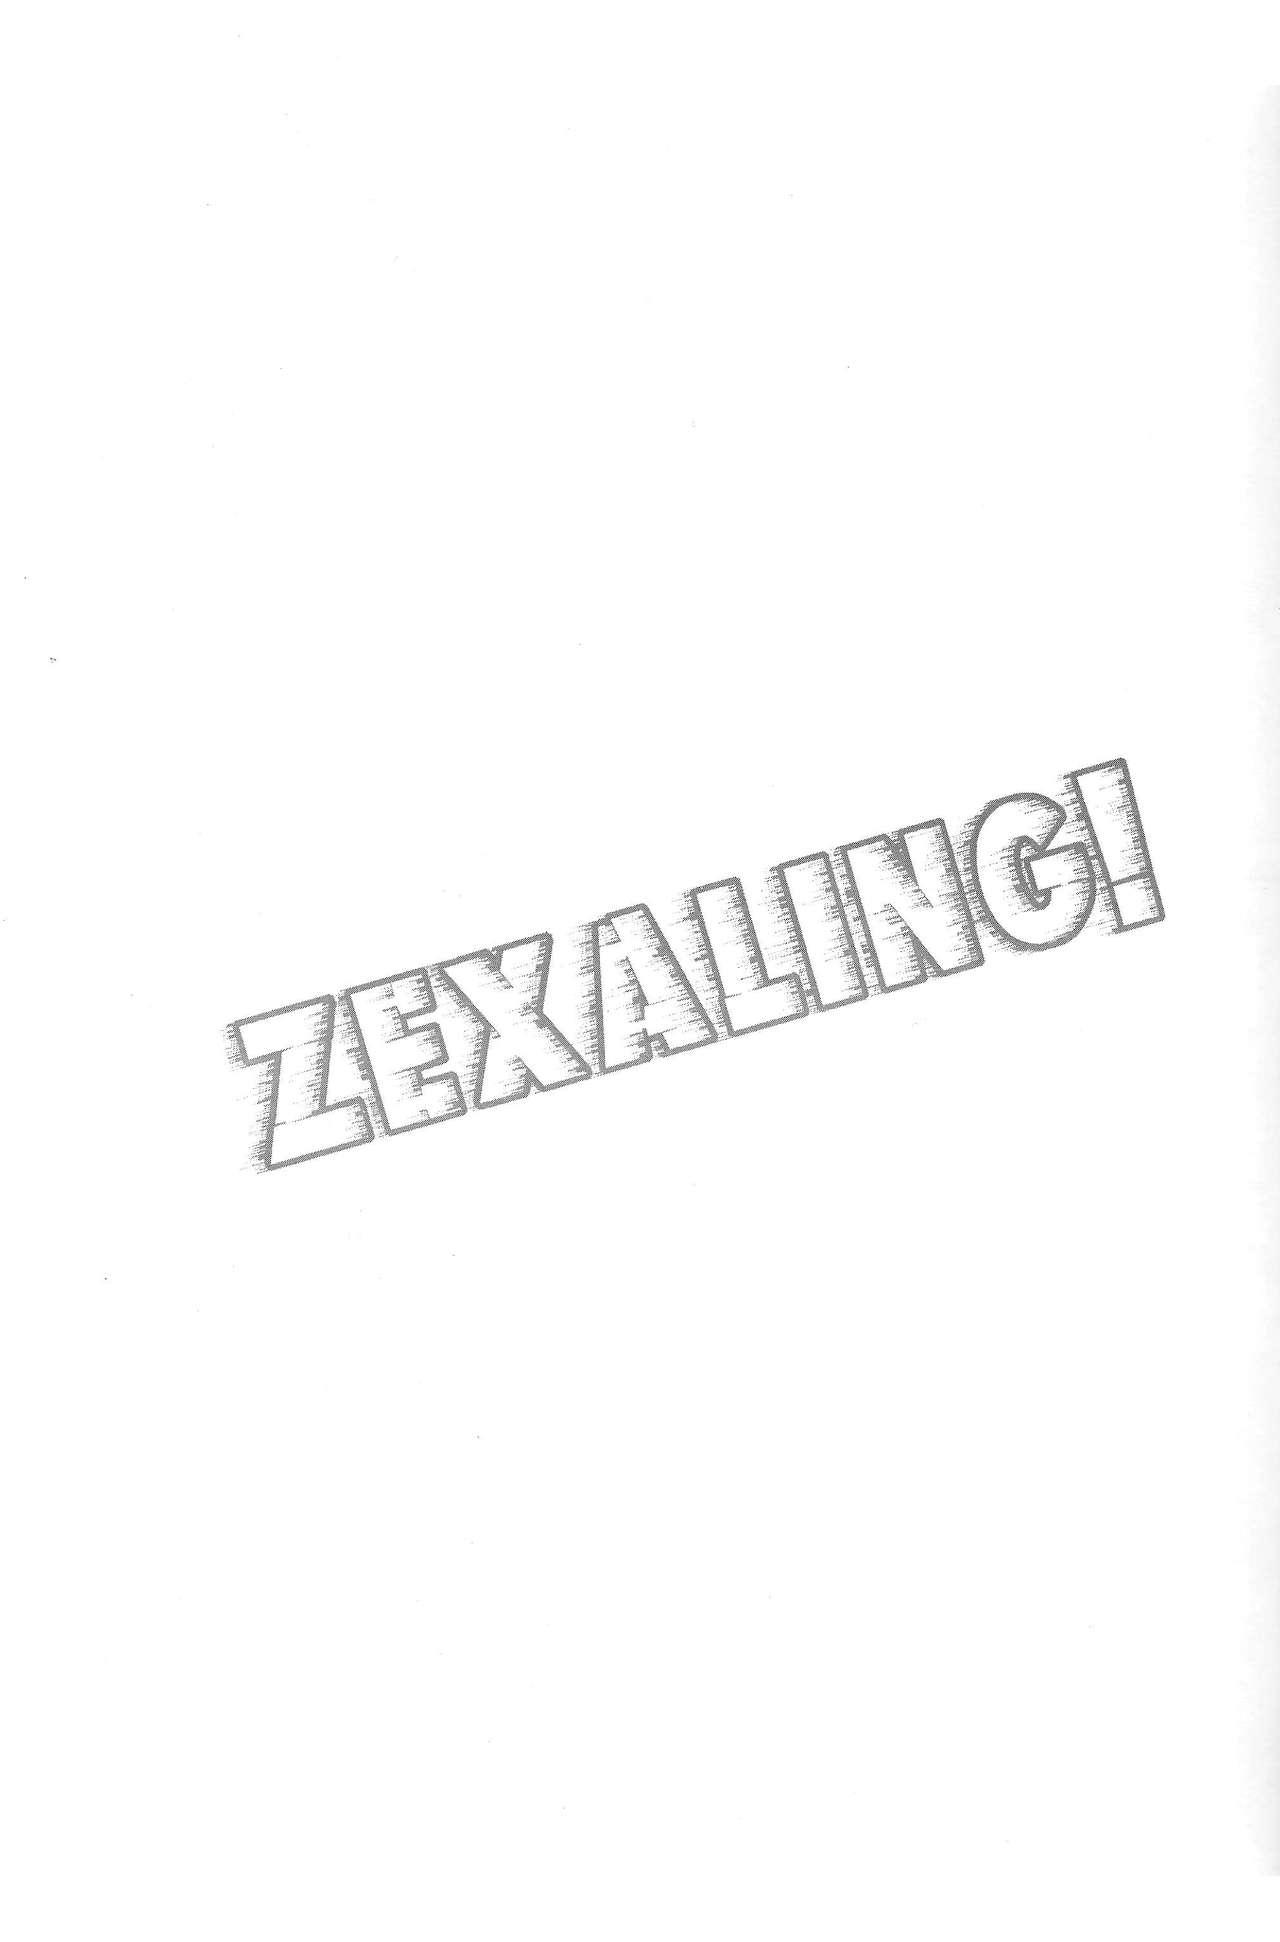 ZEXALING! 2